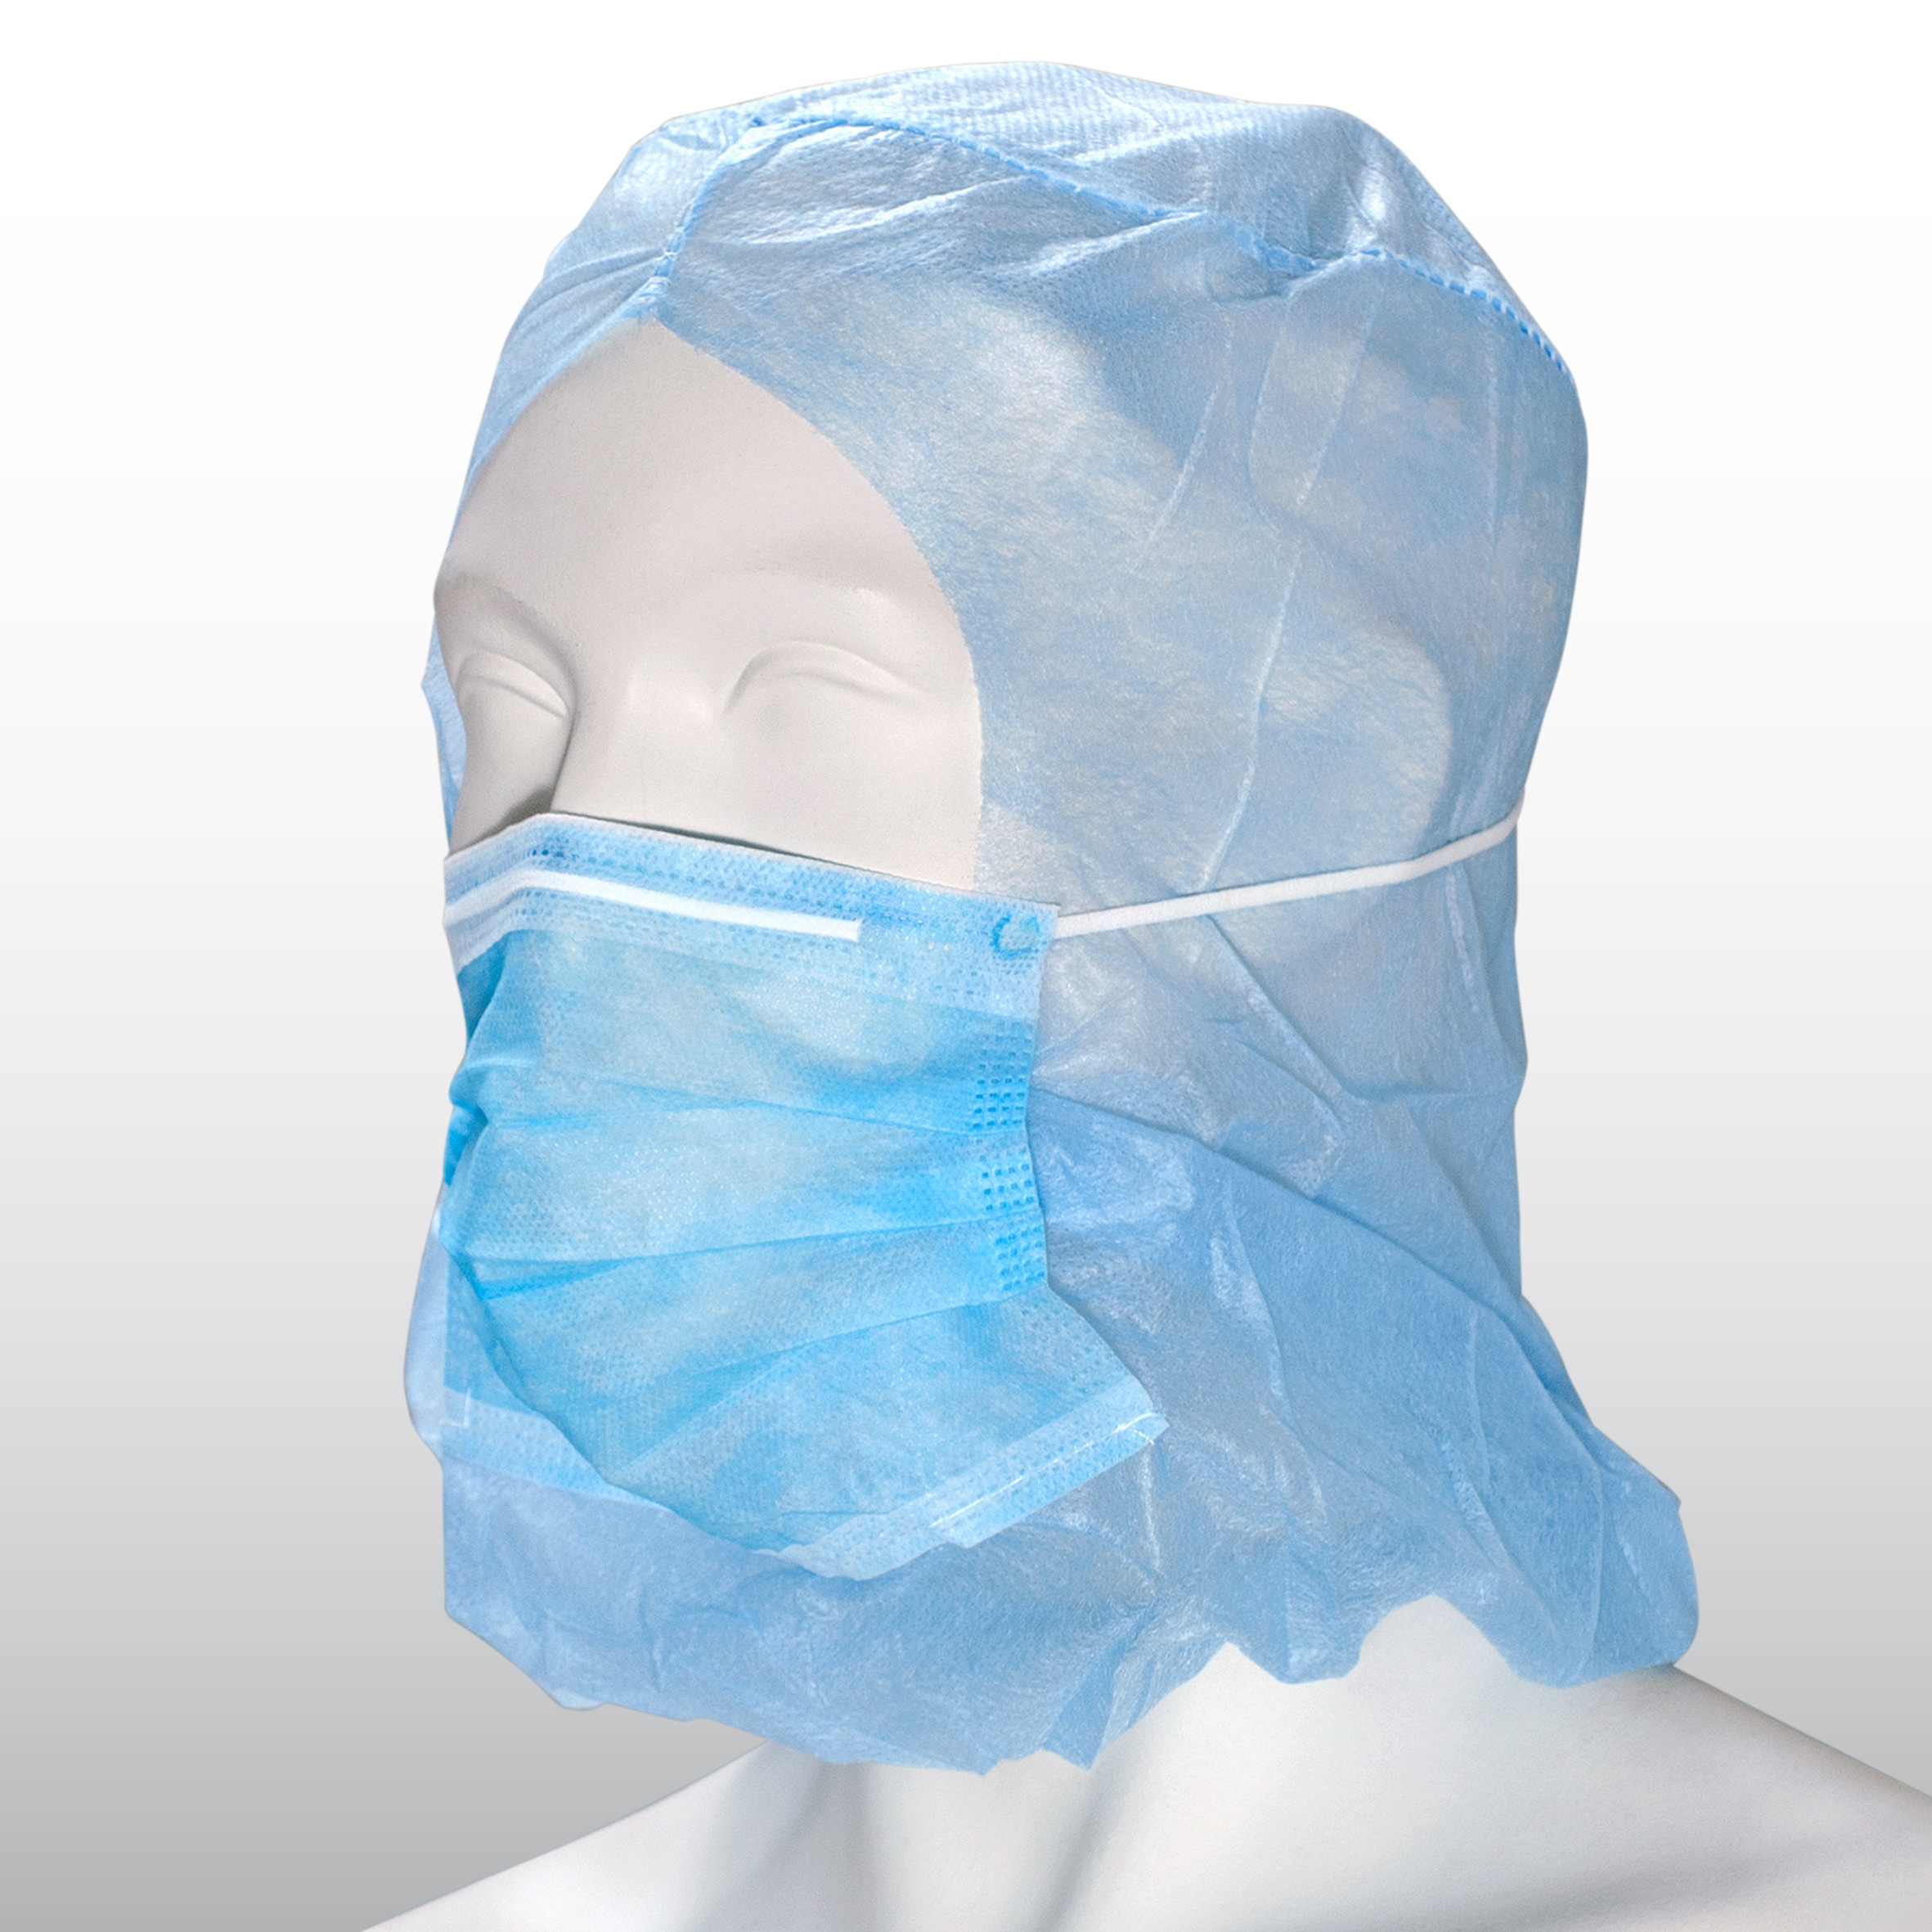 50 Stück Astronautenhaube aus PP-Vlies blau mit 2-lagigen Mundschutz mit Stirngummi